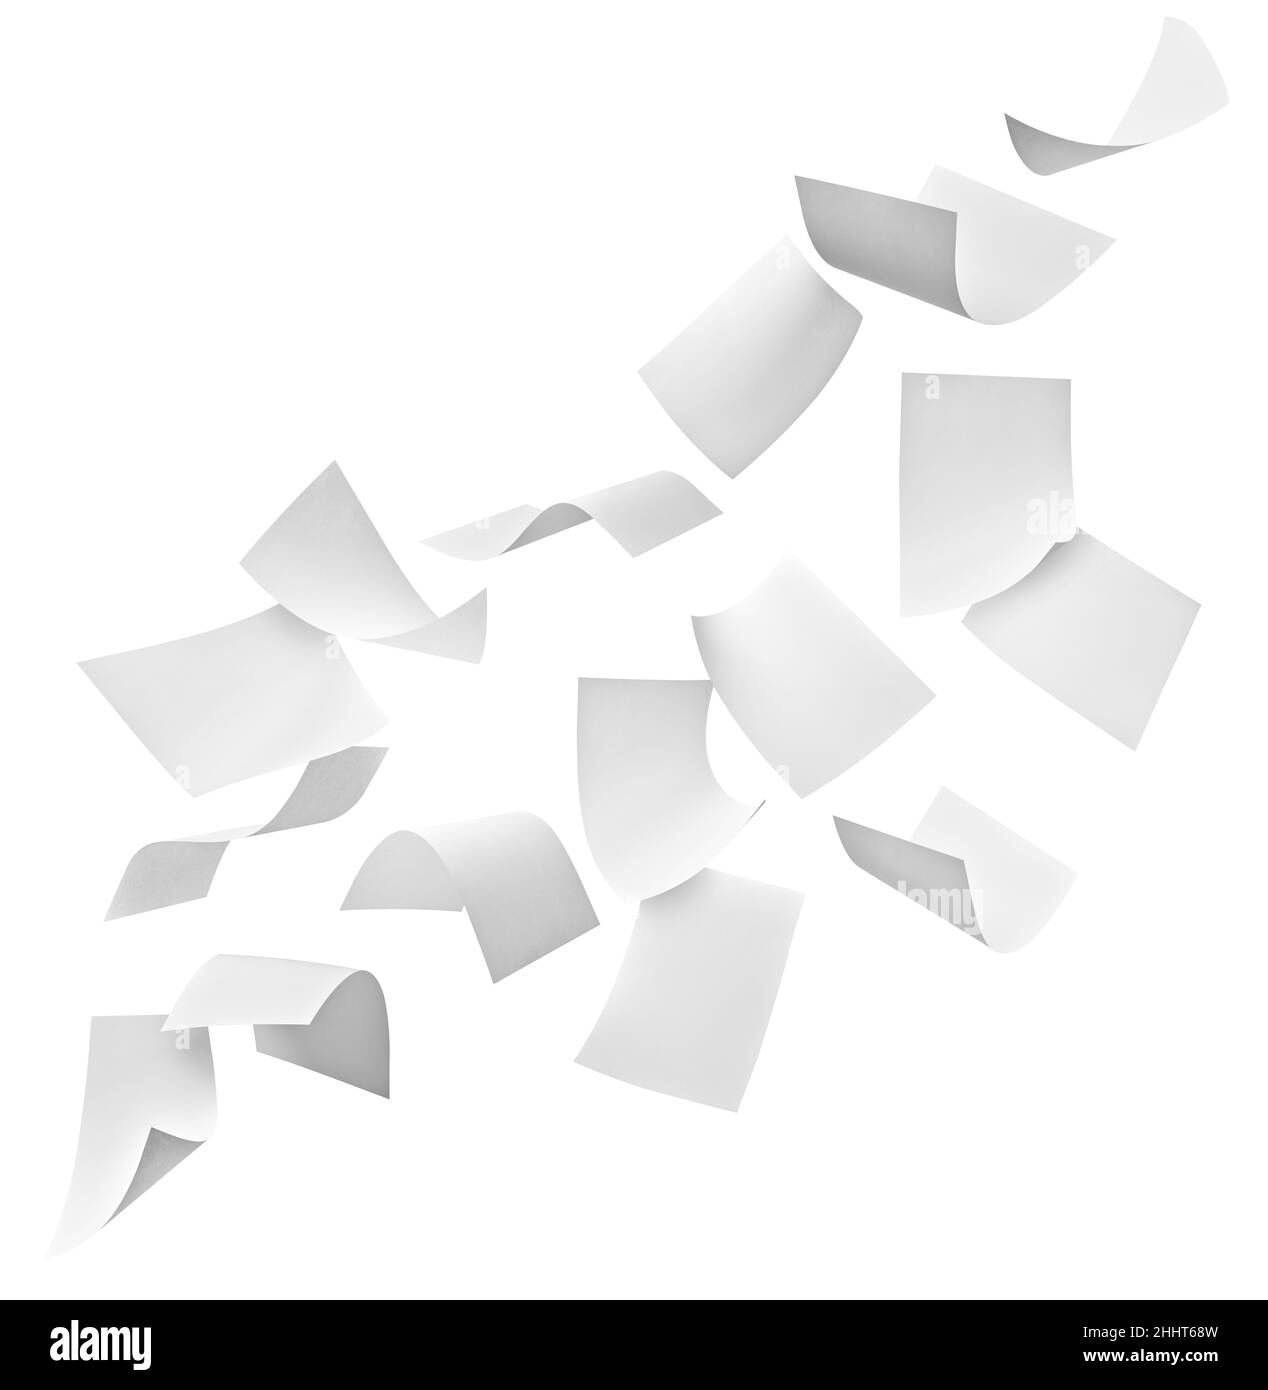 documents papier pour le vol de documents papier pour le bureau du vent d'affaires Banque D'Images